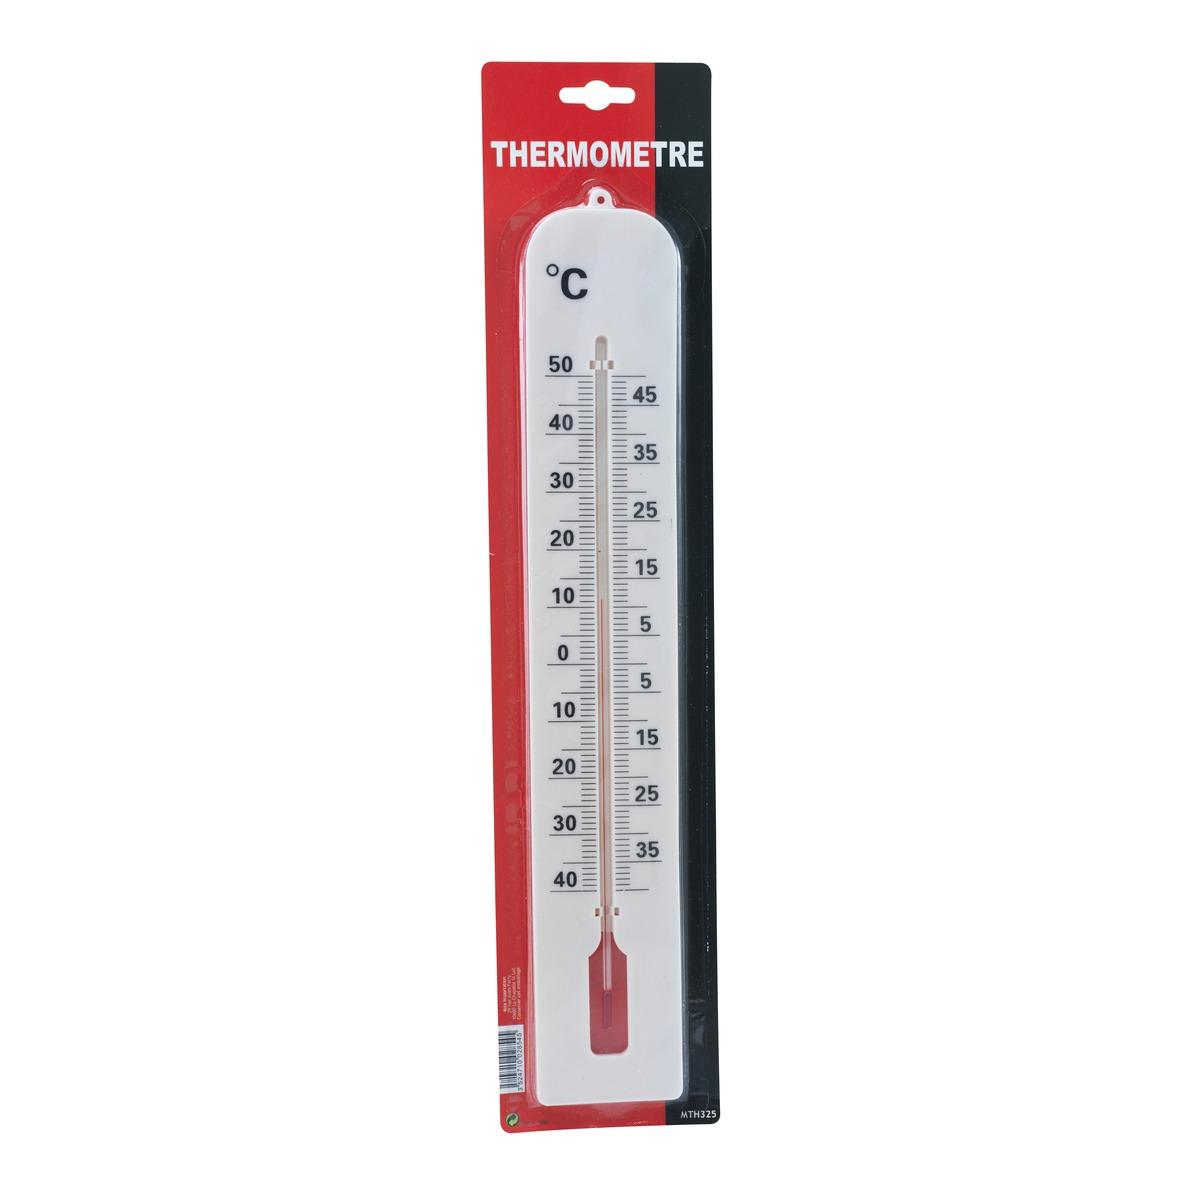 Thermomètre - Longueur 40 cm - Différents coloris